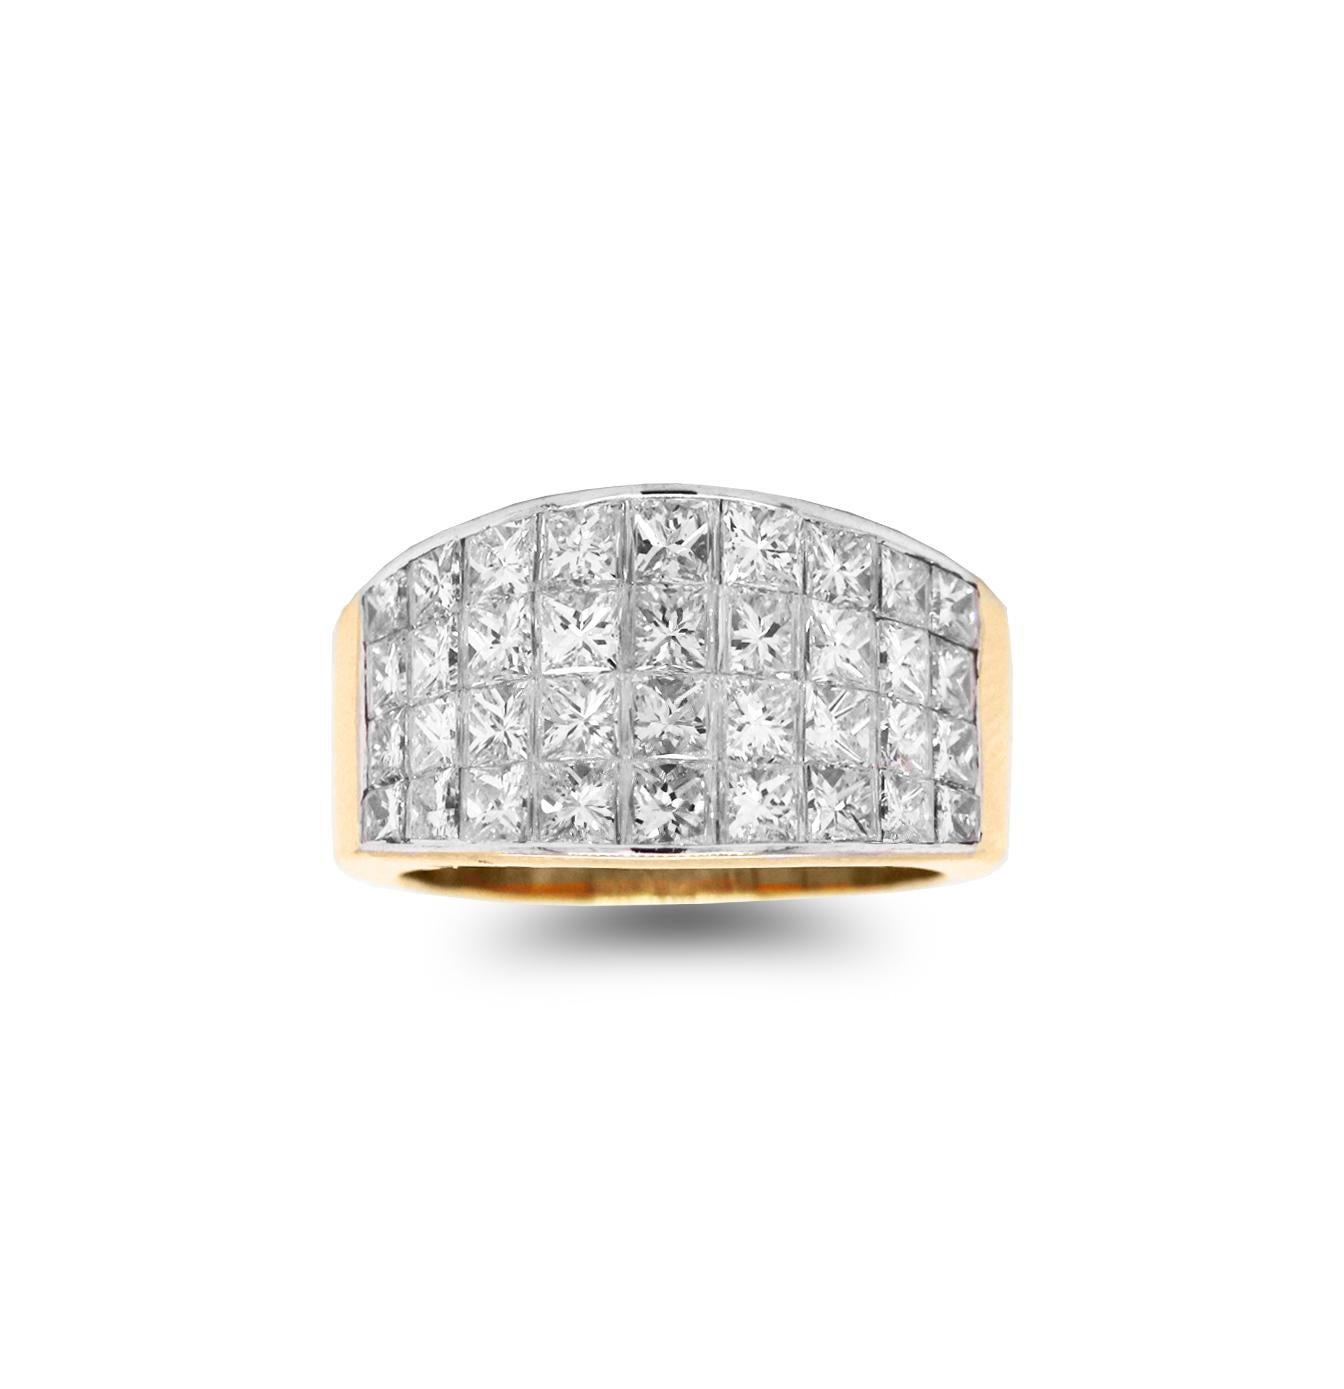 ring aus 18 K Gelb- und Weißgold mit unsichtbar gefassten Diamanten im Prinzessinnenschliff

3.80 Karat, Farbe G-F, Reinheit VS, Gesamtgewicht der Diamanten im Prinzessinnenschliff. Diamanten sind unsichtbar gefasst.

Ringfläche ist 0,45 Zoll